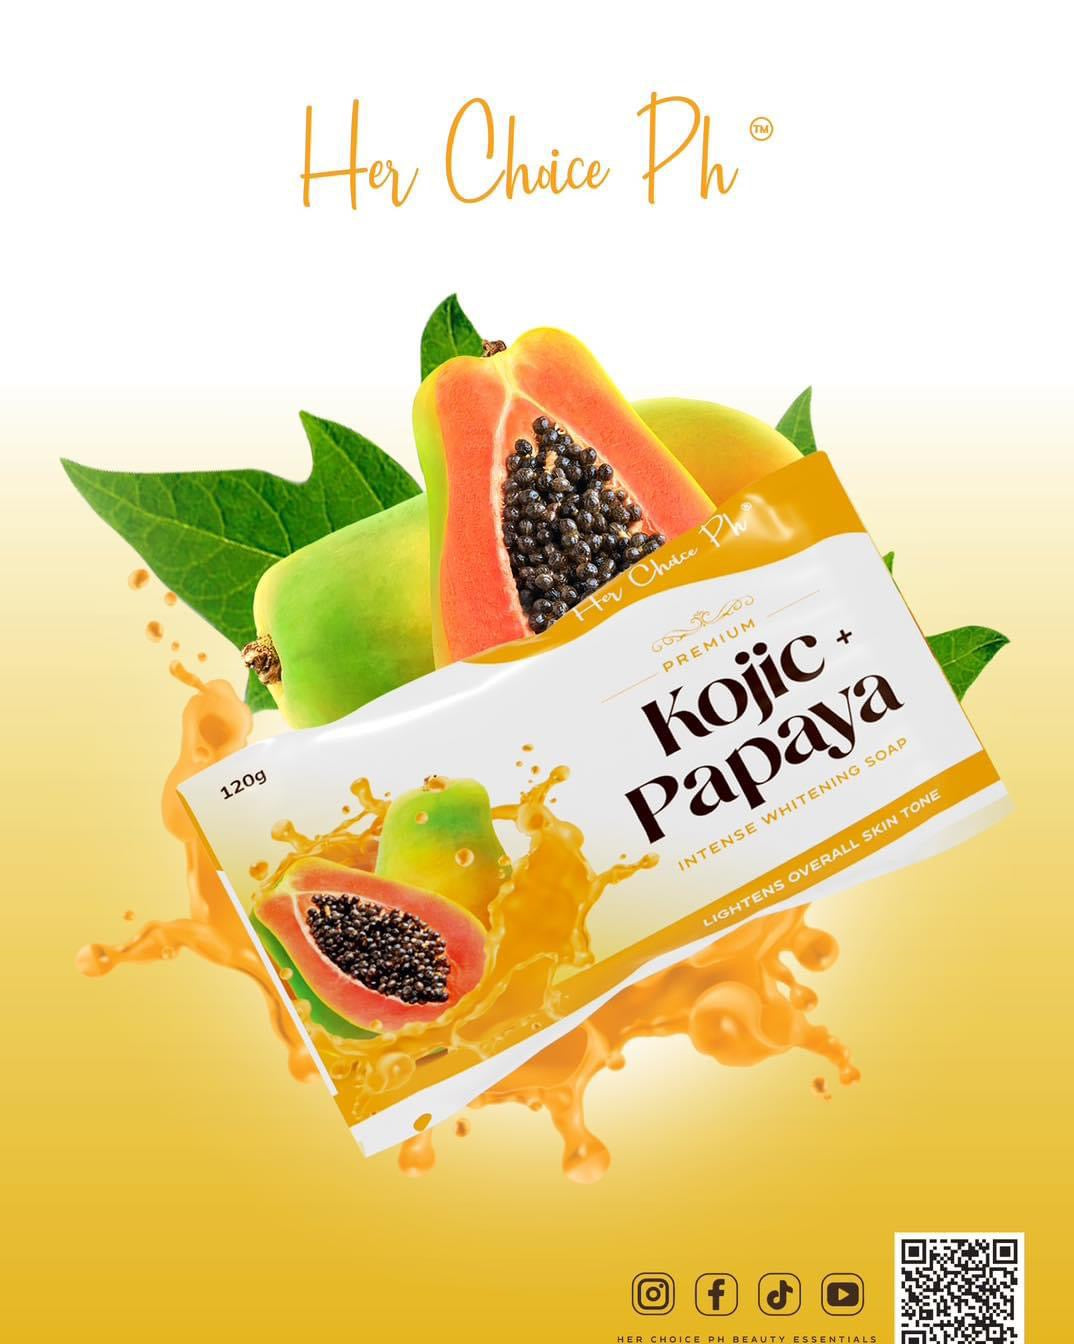 Her Choice Ph Premium Kojic Papaya Intense Whitening Soap - True Beauty Skin Essentials